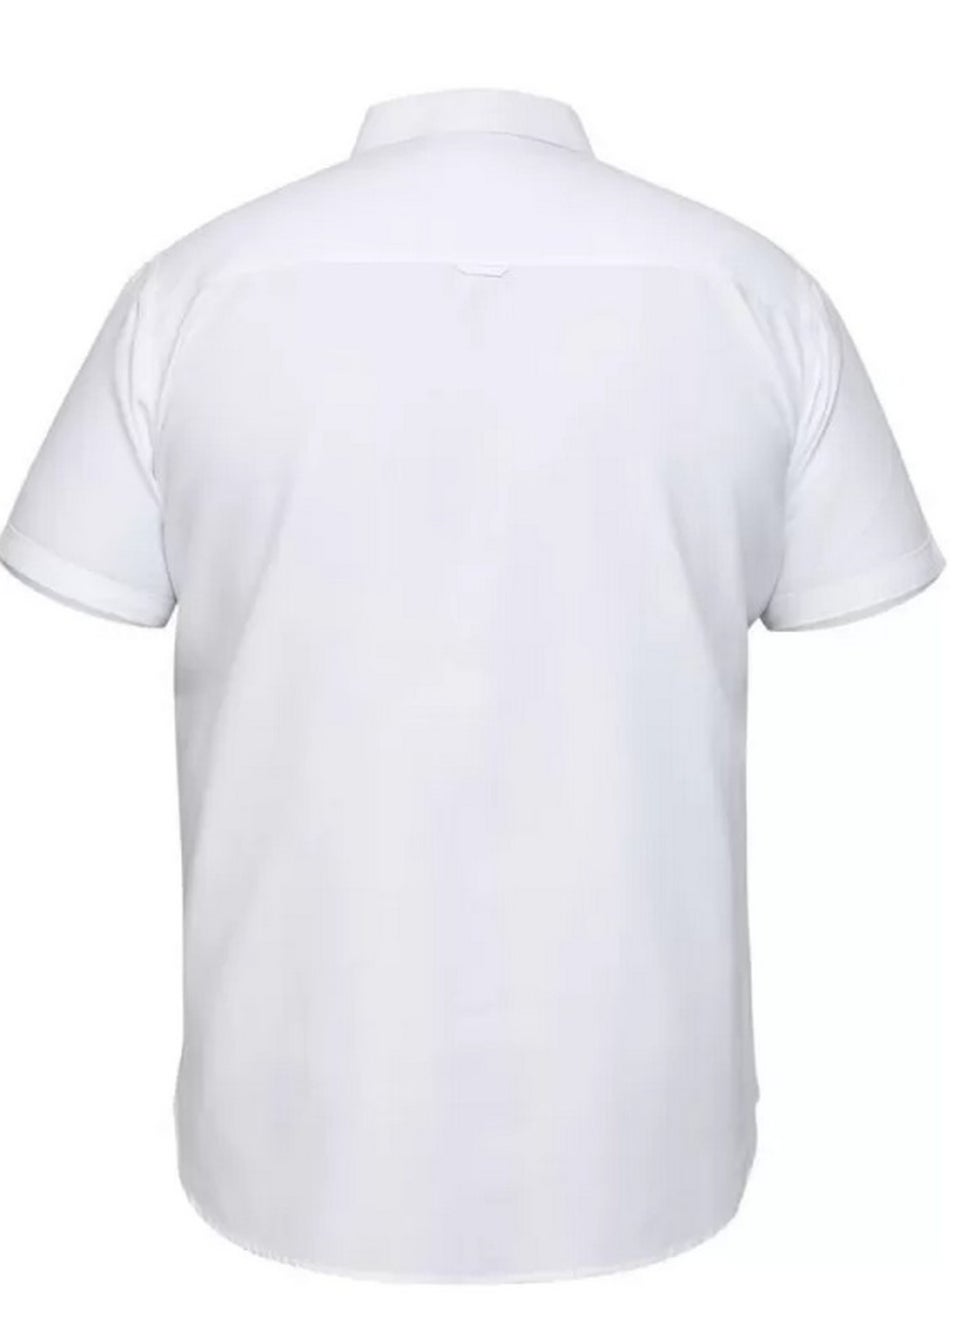 Duke White James Oxford Kingsize Short-Sleeved Shirt